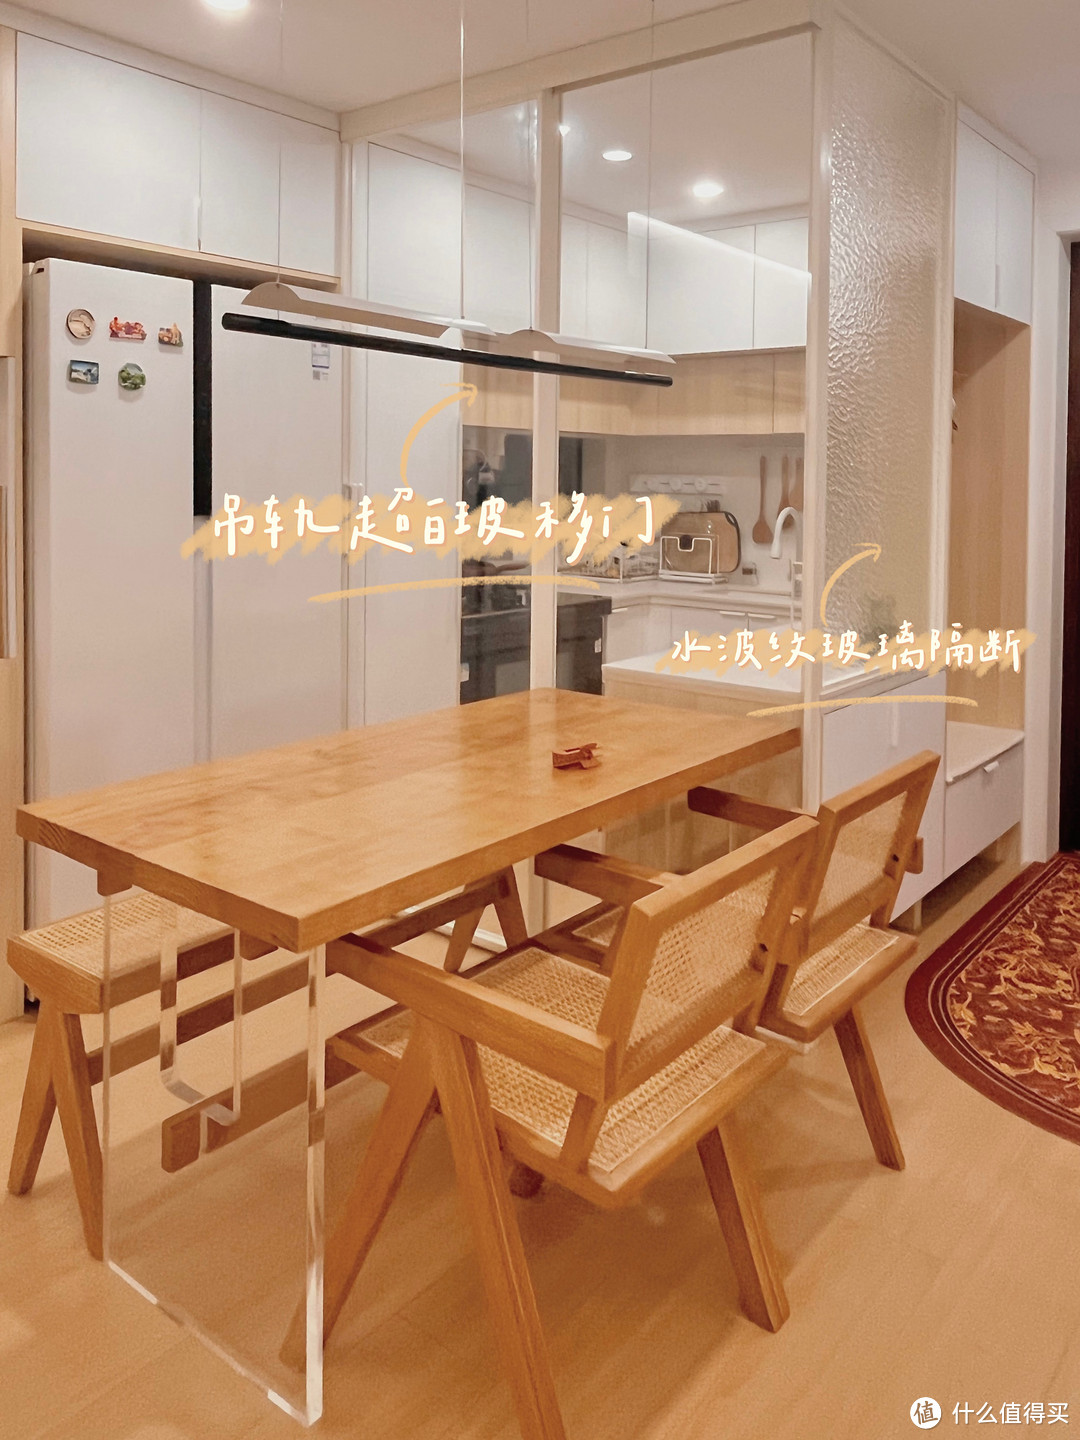 4.6㎡小厨房设计精选案例：看设计师如何开挂般安排空间